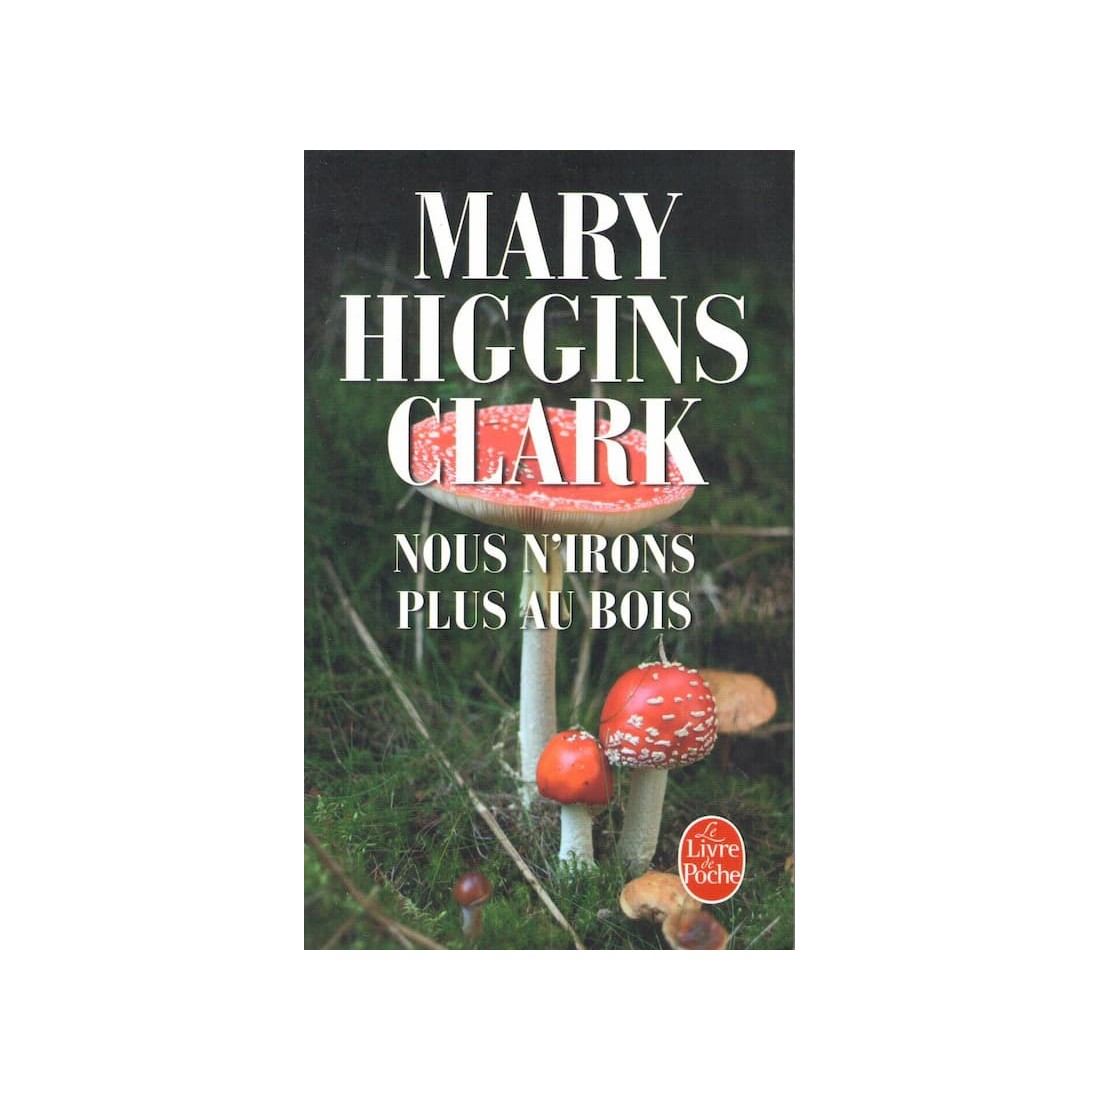 Nous n'irons plus au bois - Roman de Mary Higgins Clark - Ocazlivres.com